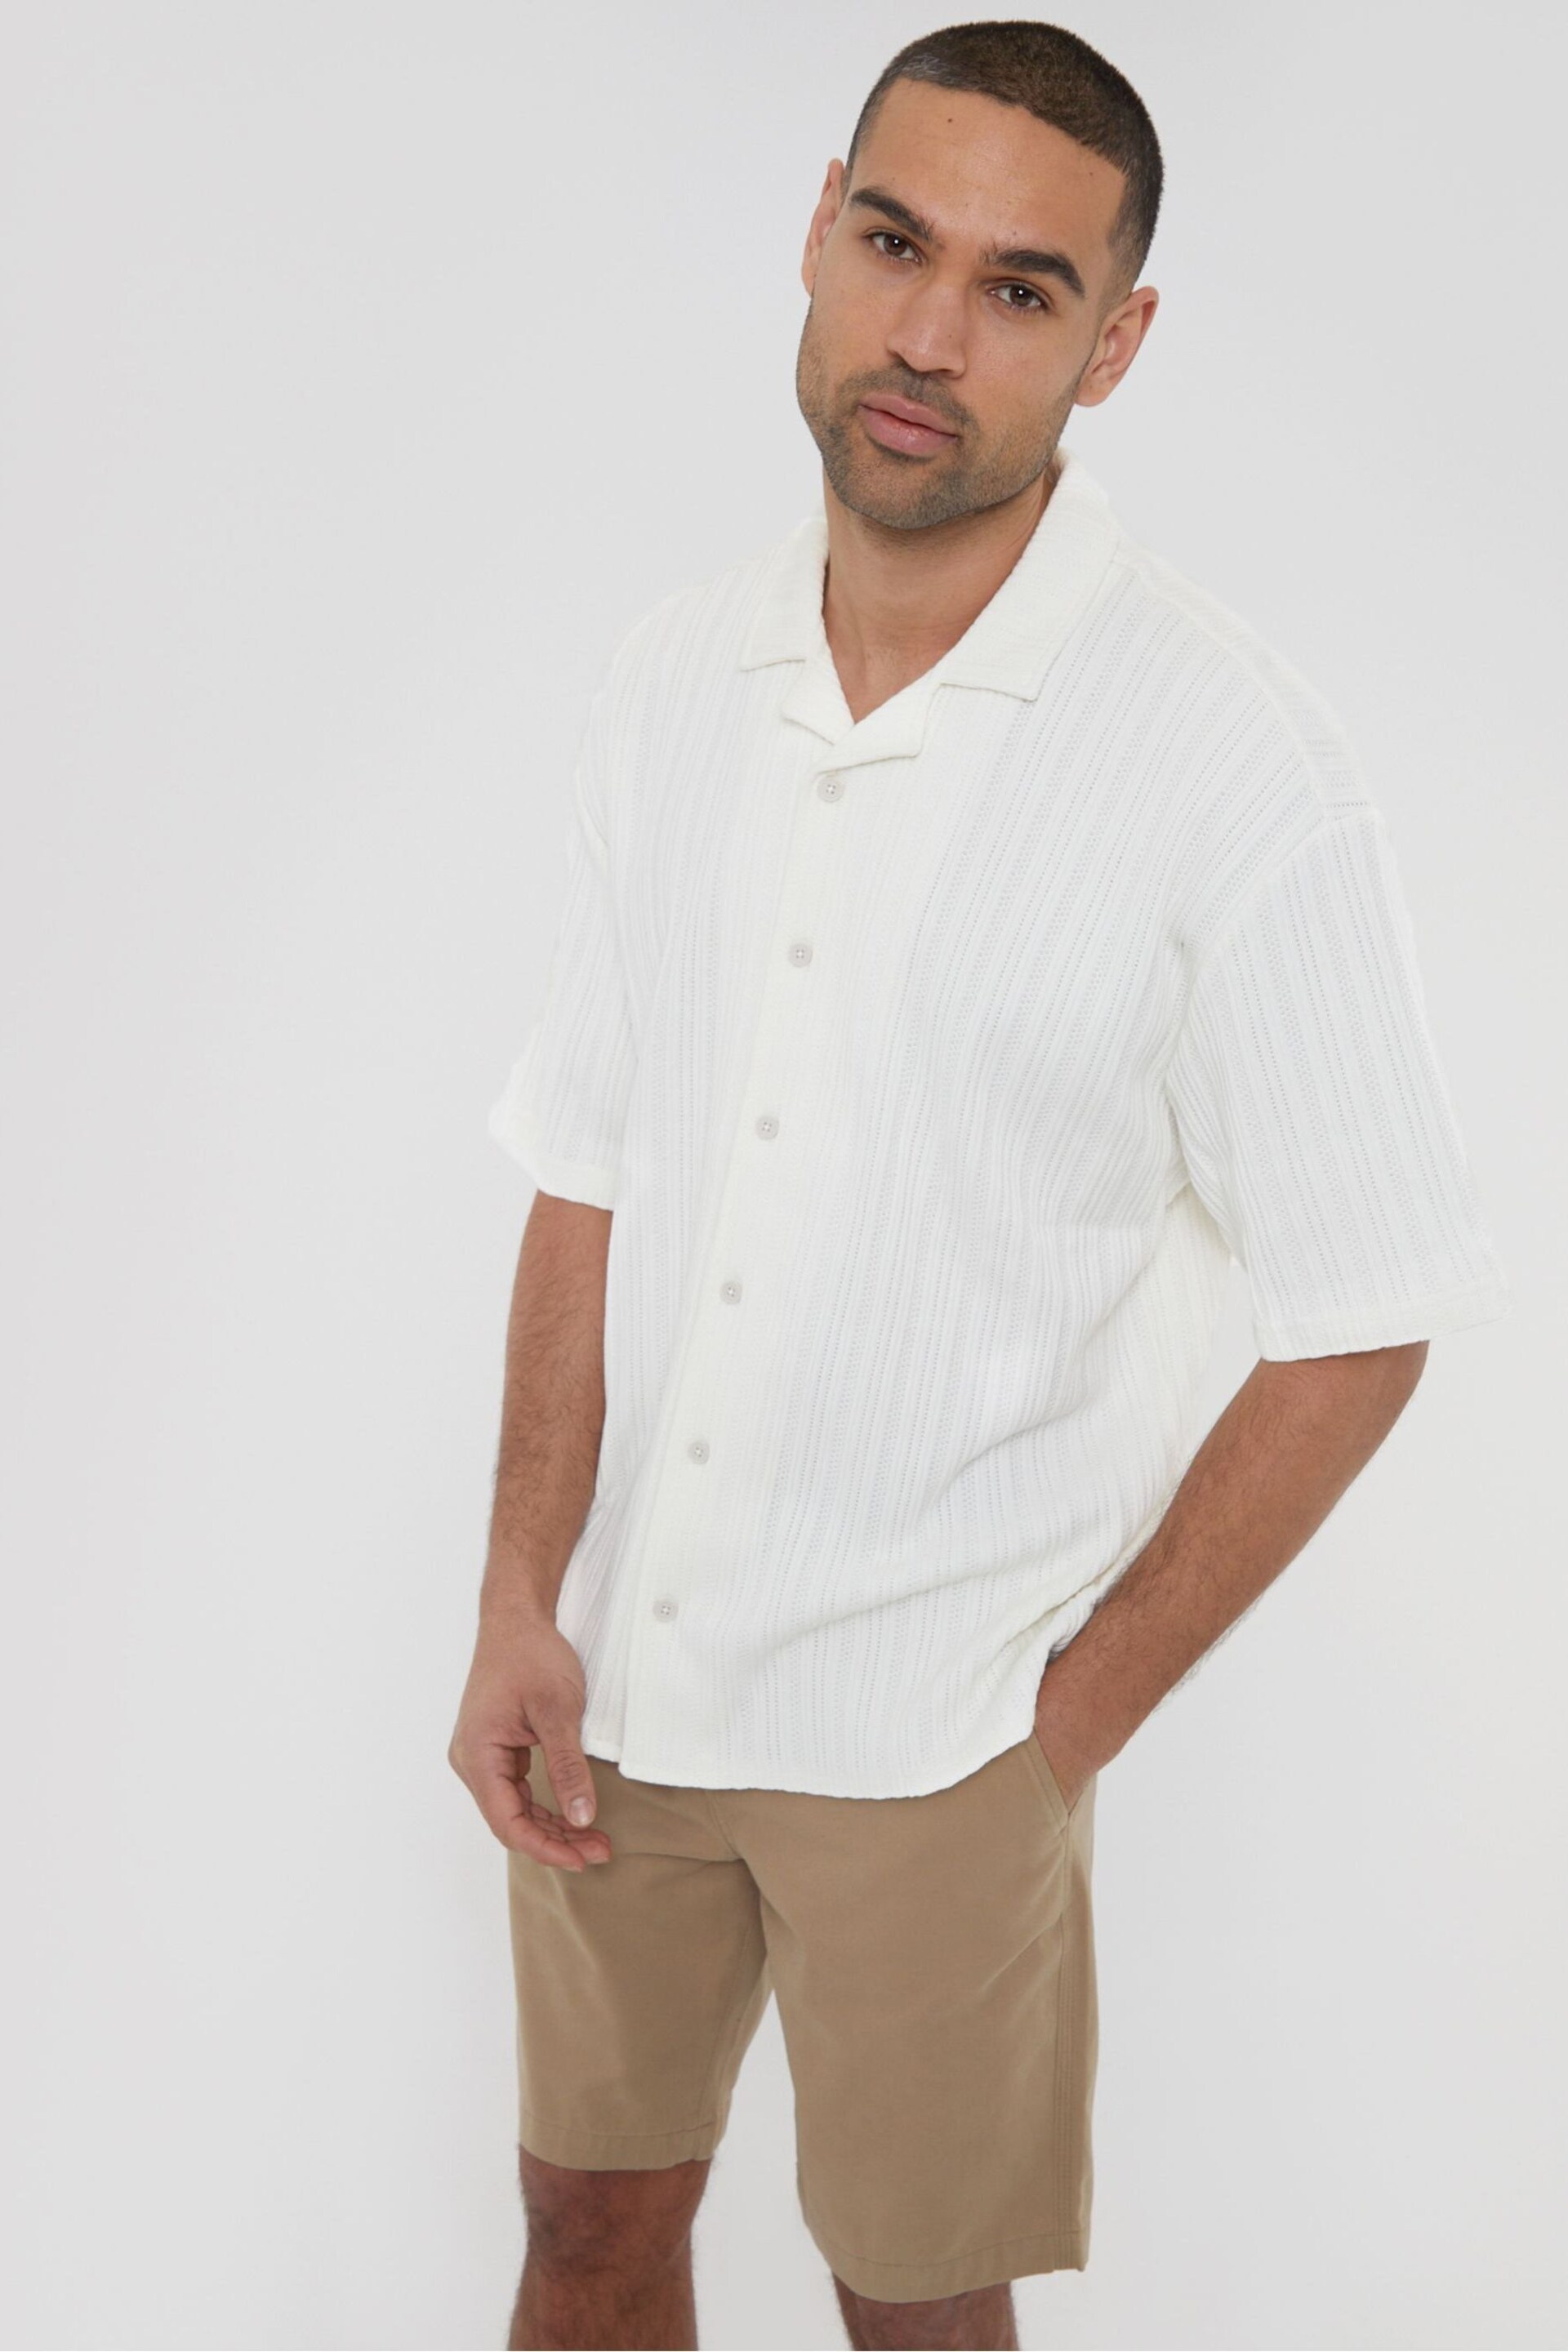 Threadbare White Cotton Blend Zig Zag Revere Collar Short Sleeve Shirt - Image 2 of 5